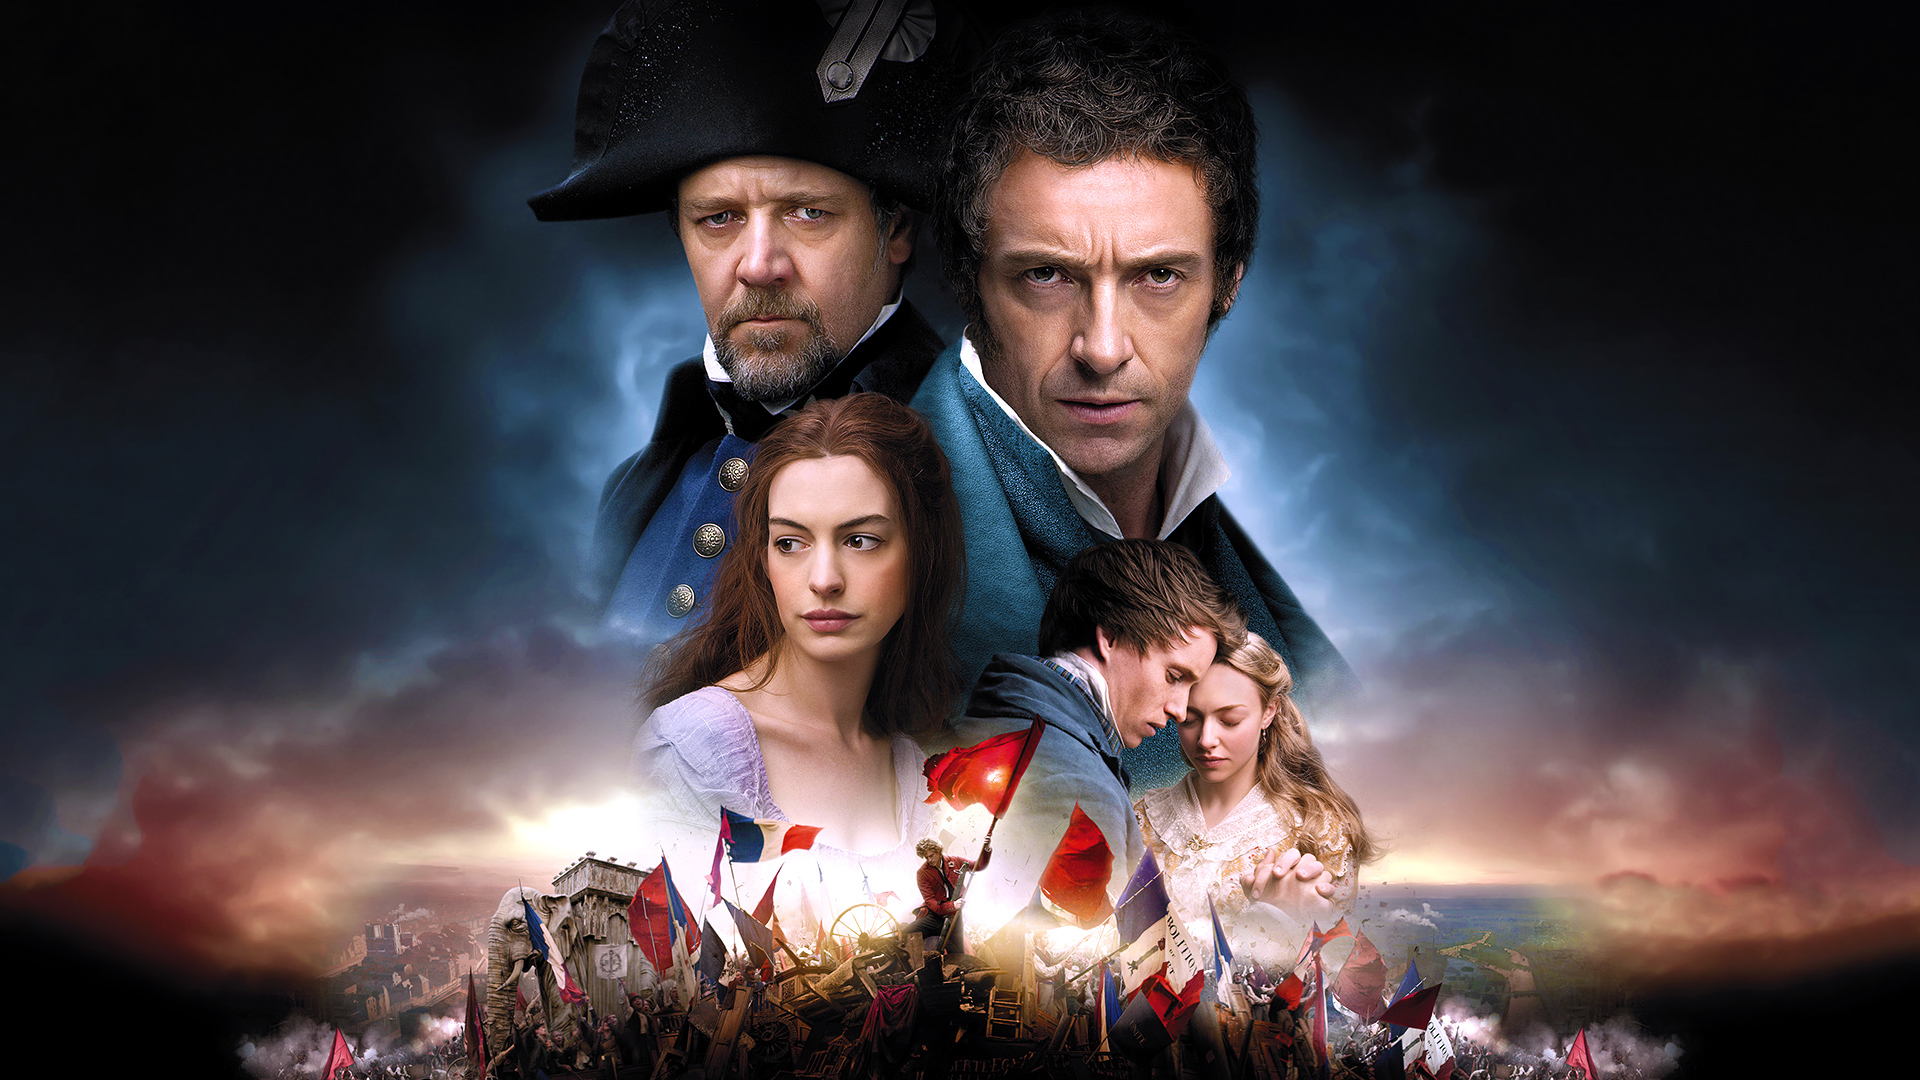 Movie Les Misérables (2012) HD Wallpaper | Background Image